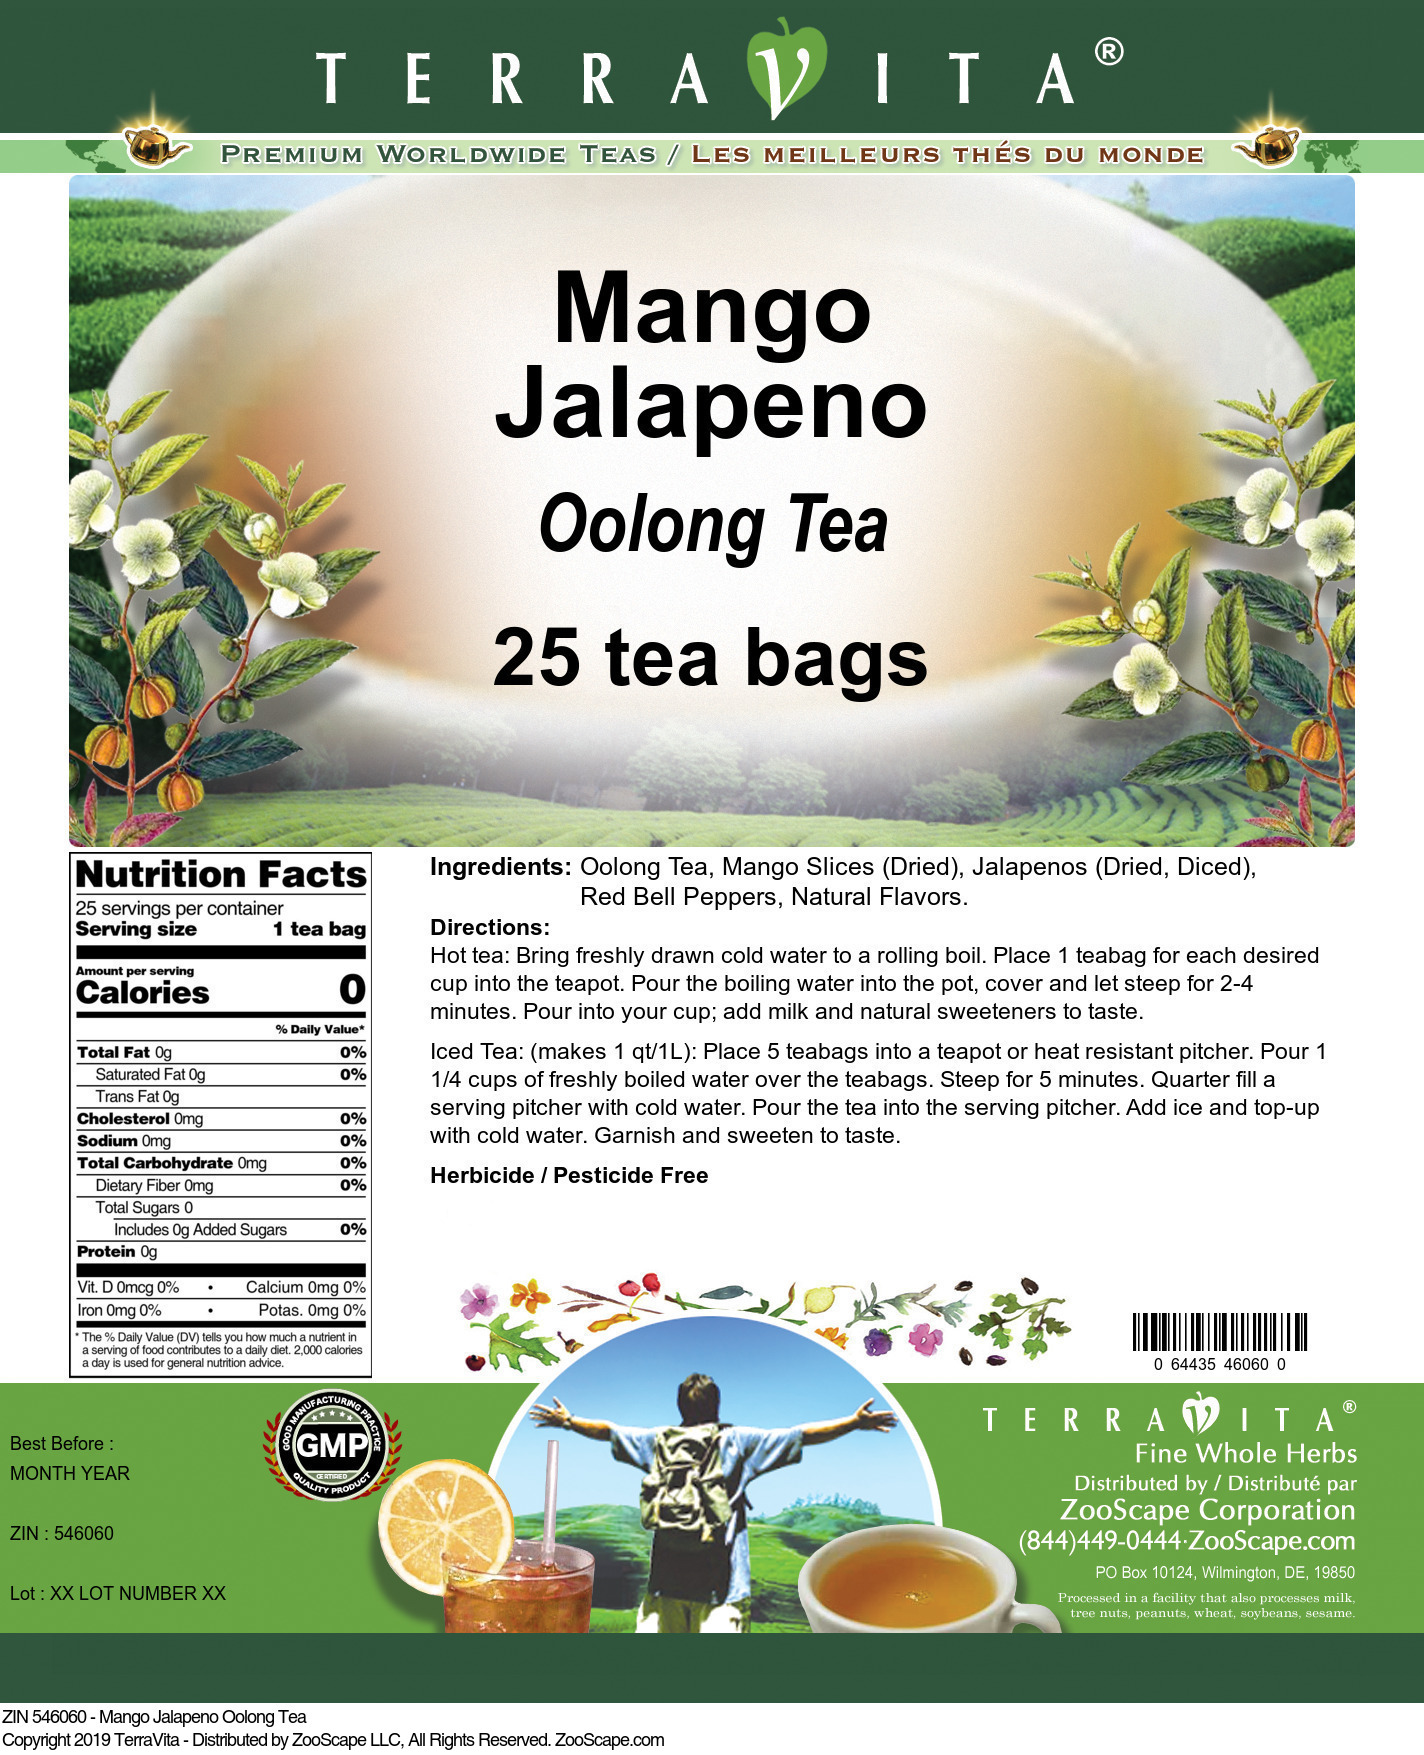 Mango Jalapeno Oolong Tea - Label